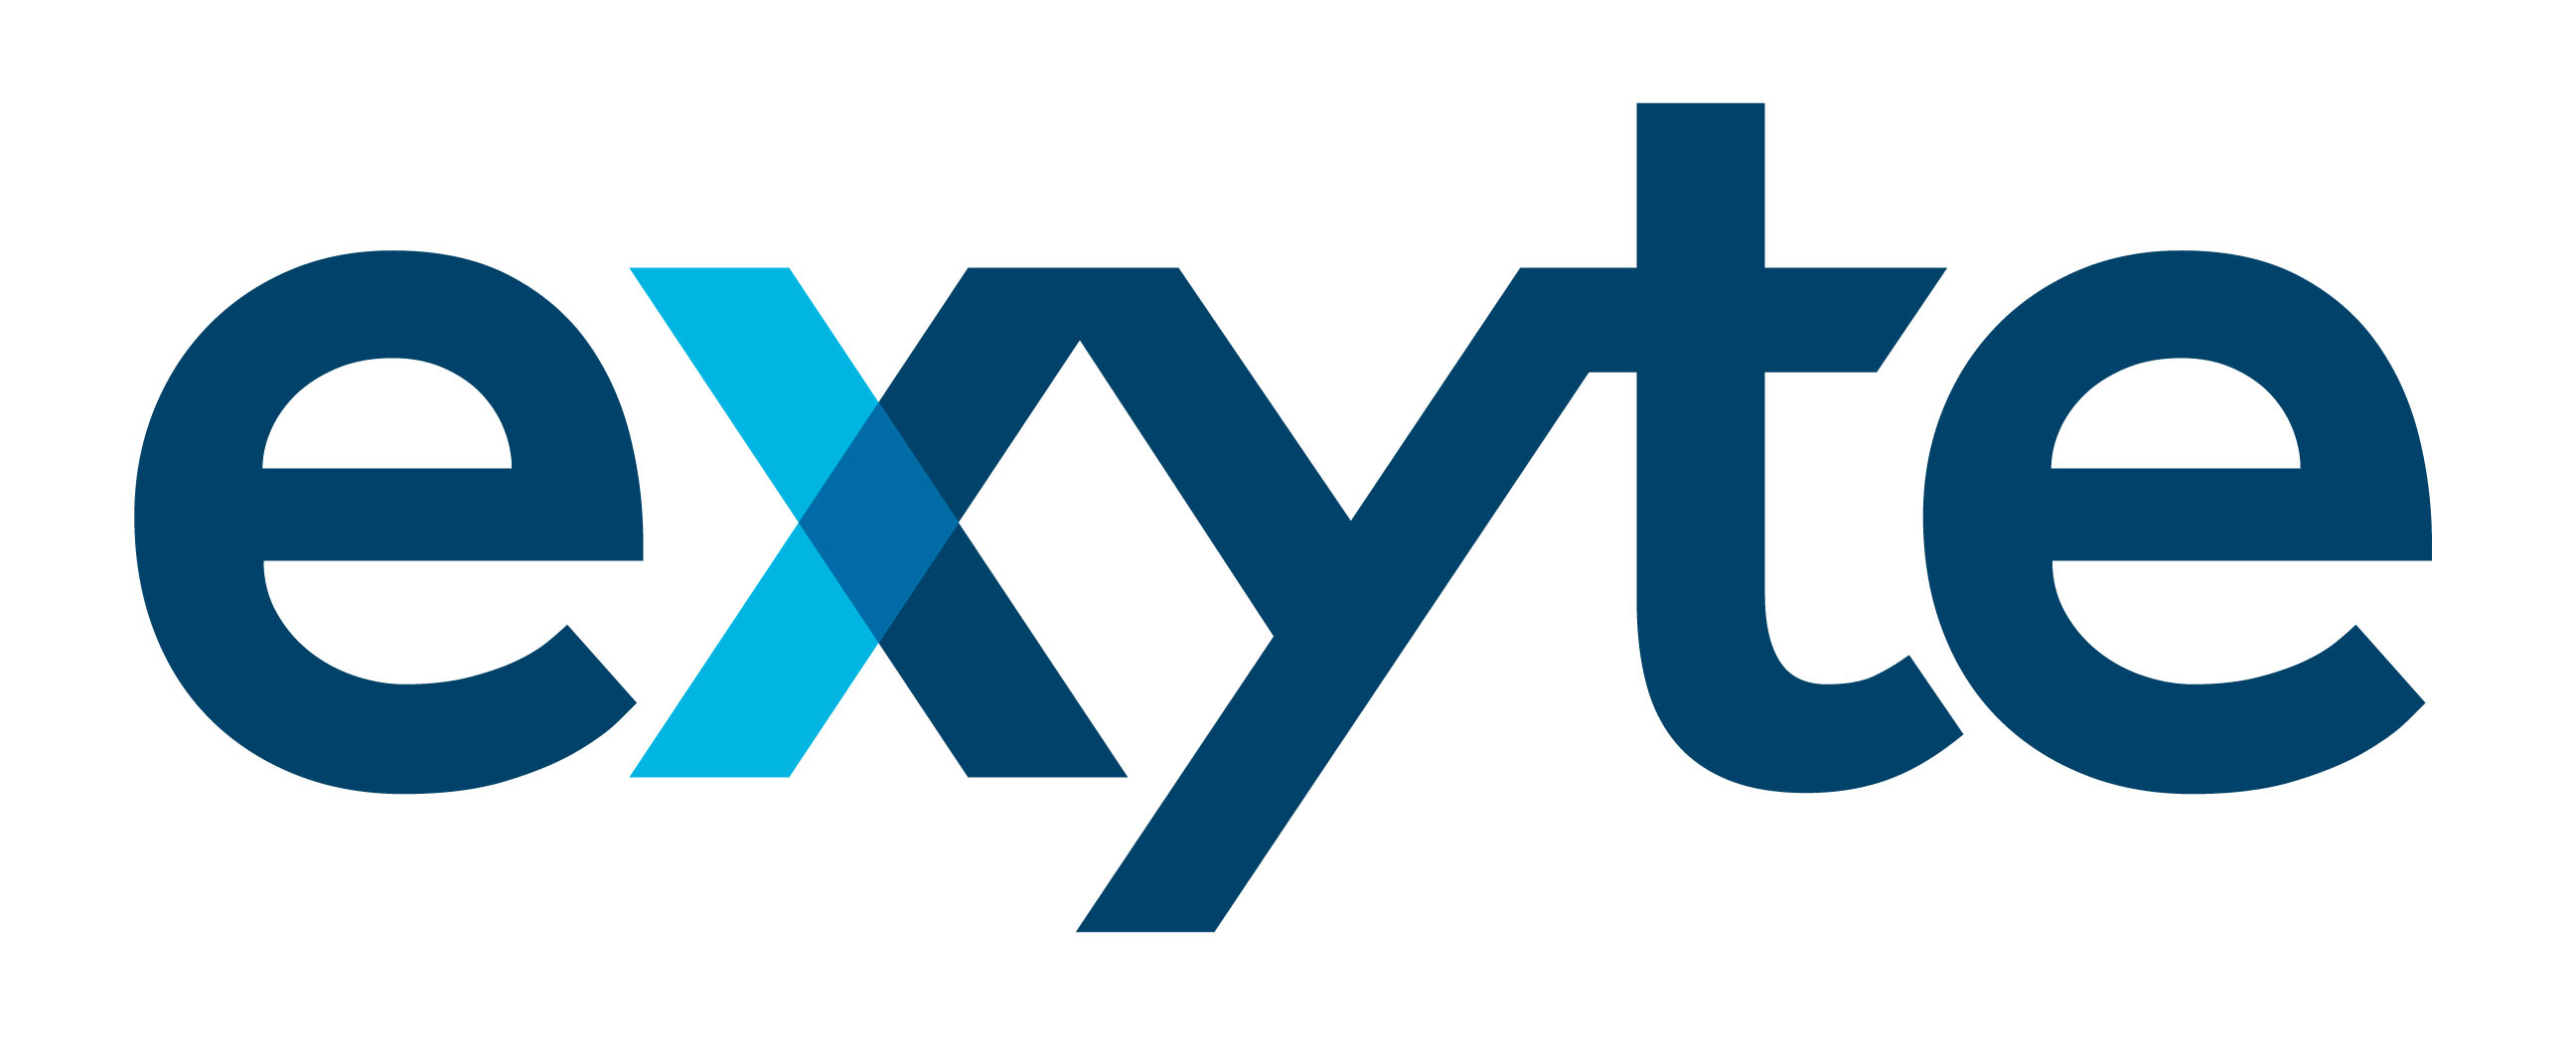 logo for Exyte Hargreaves Ltd